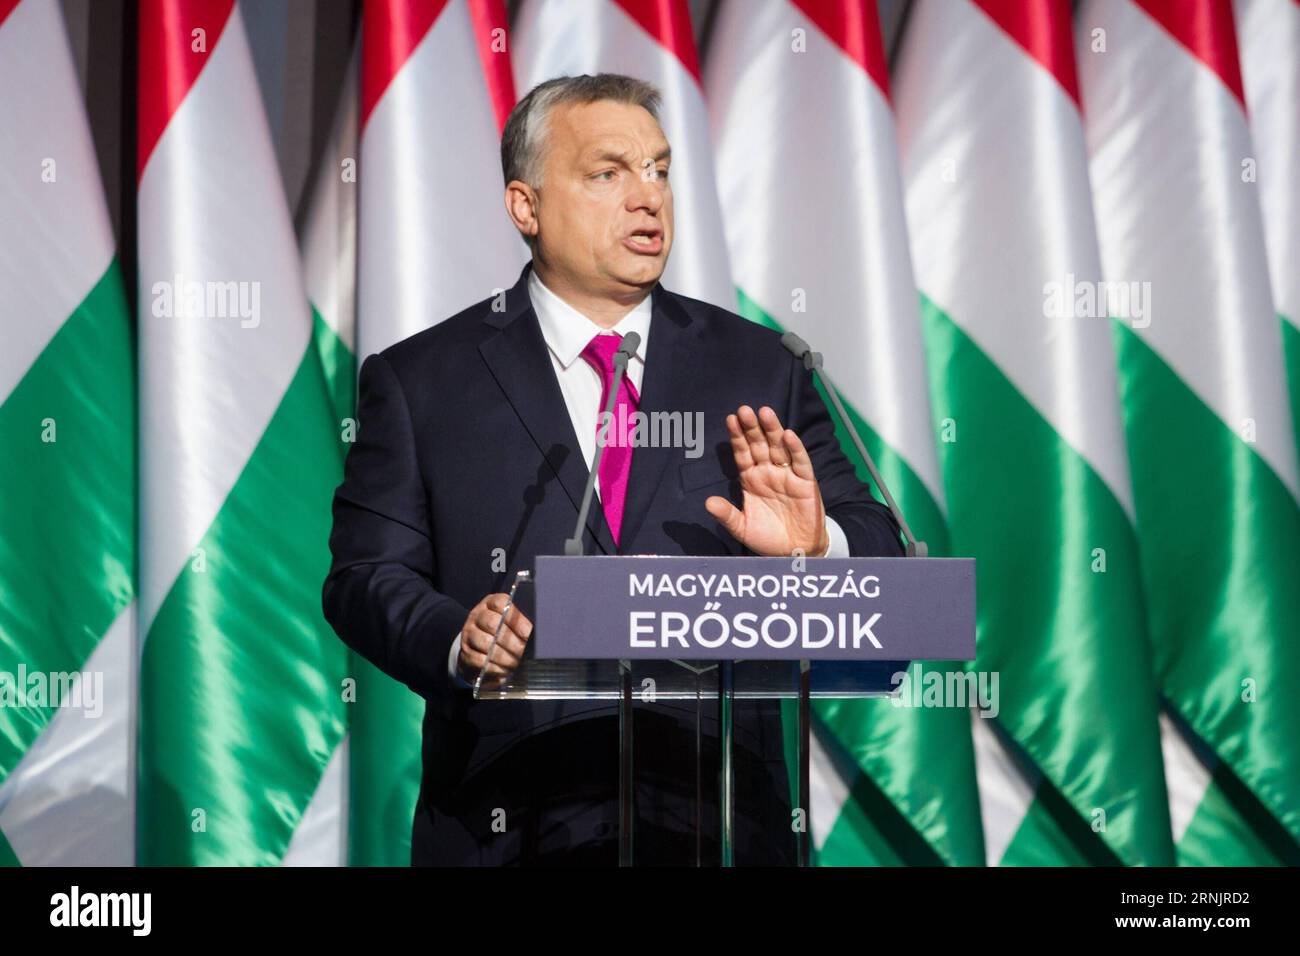 (170210) -- BUDAPEST, 10. Februar 2017 -- der ungarische Premierminister Viktor Orban legt am 10. Februar 2017 in Budapest, Ungarn, einen Bericht zur Lage der Nation vor. Viktor Orban befürwortete am Freitag erneut eine nationalistische Politik und behauptete, dass Globalismus und politische Korrektheit sowohl in West- als auch in Osteuropa auf dem Weg nach draußen seien. Orban gab die Erklärung ab, als er sich in einem State-of-the-Nation-Bericht an die Ungarn wandte, der das vergangene Jahr analysierte und die unmittelbare Zukunft darlegte. UNGARN-BUDAPEST-PM-REPORT-STATE OF THE NATION SzilardxVoros PUBLICATIONxNOTxINxCHN 170210 Budapest 10. Februar 2017 Ungarische PR Stockfoto